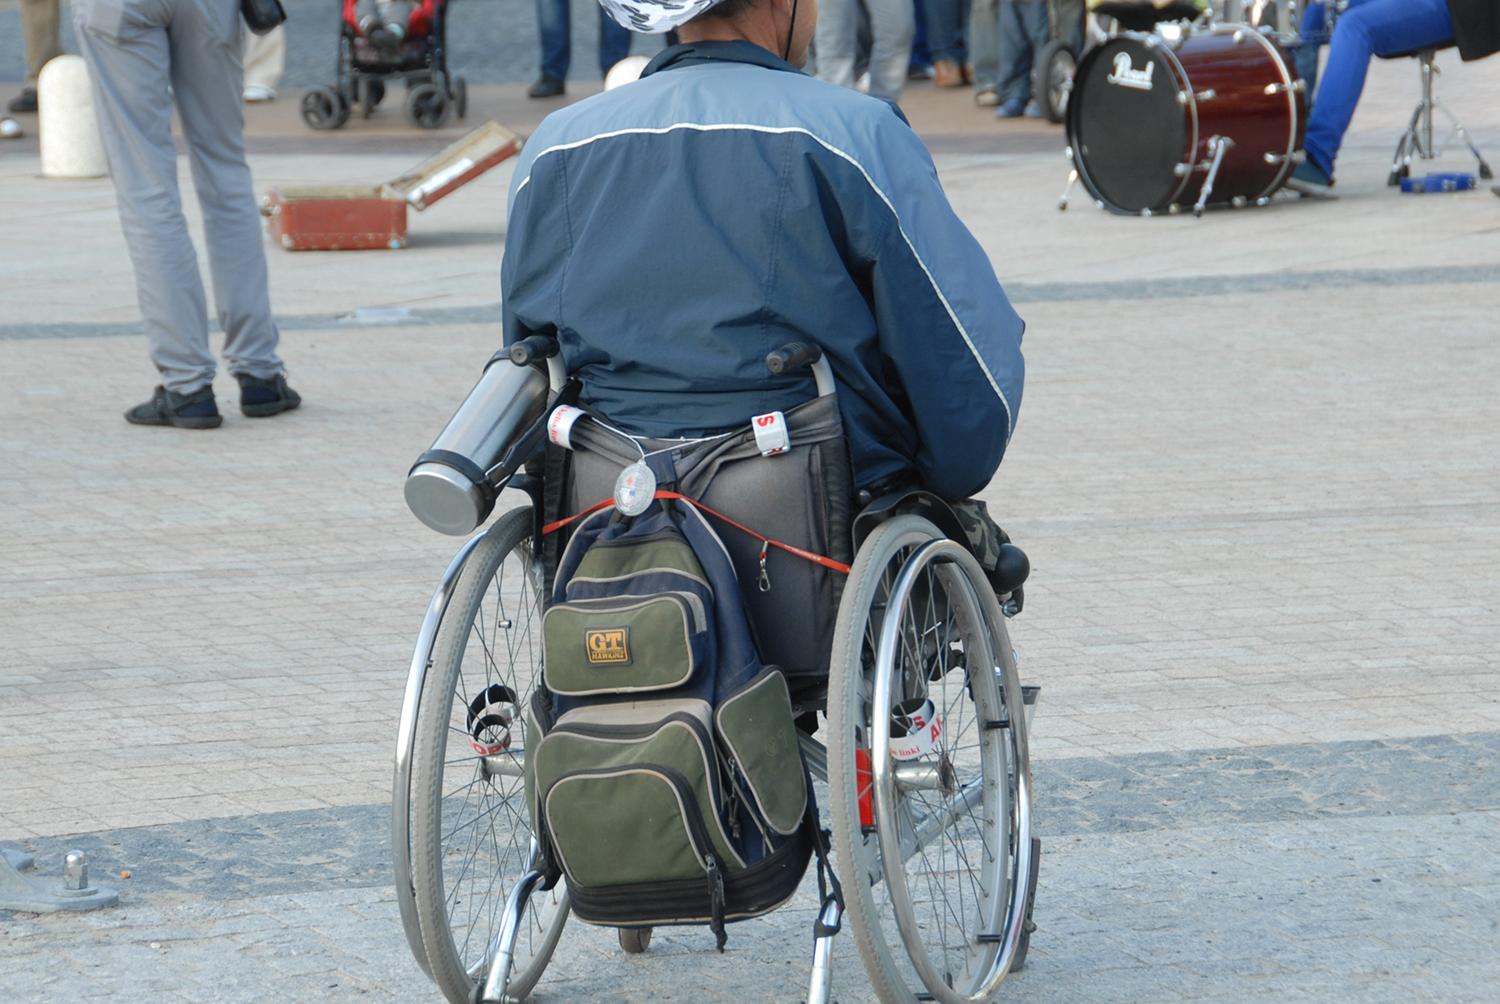 Neįgaliesiems padės asmeninis asistentas / Gedimino Nemunaičio nuotr. Neįgalieji turės galimybę pasinaudoti asmeninio asistento pagalba.